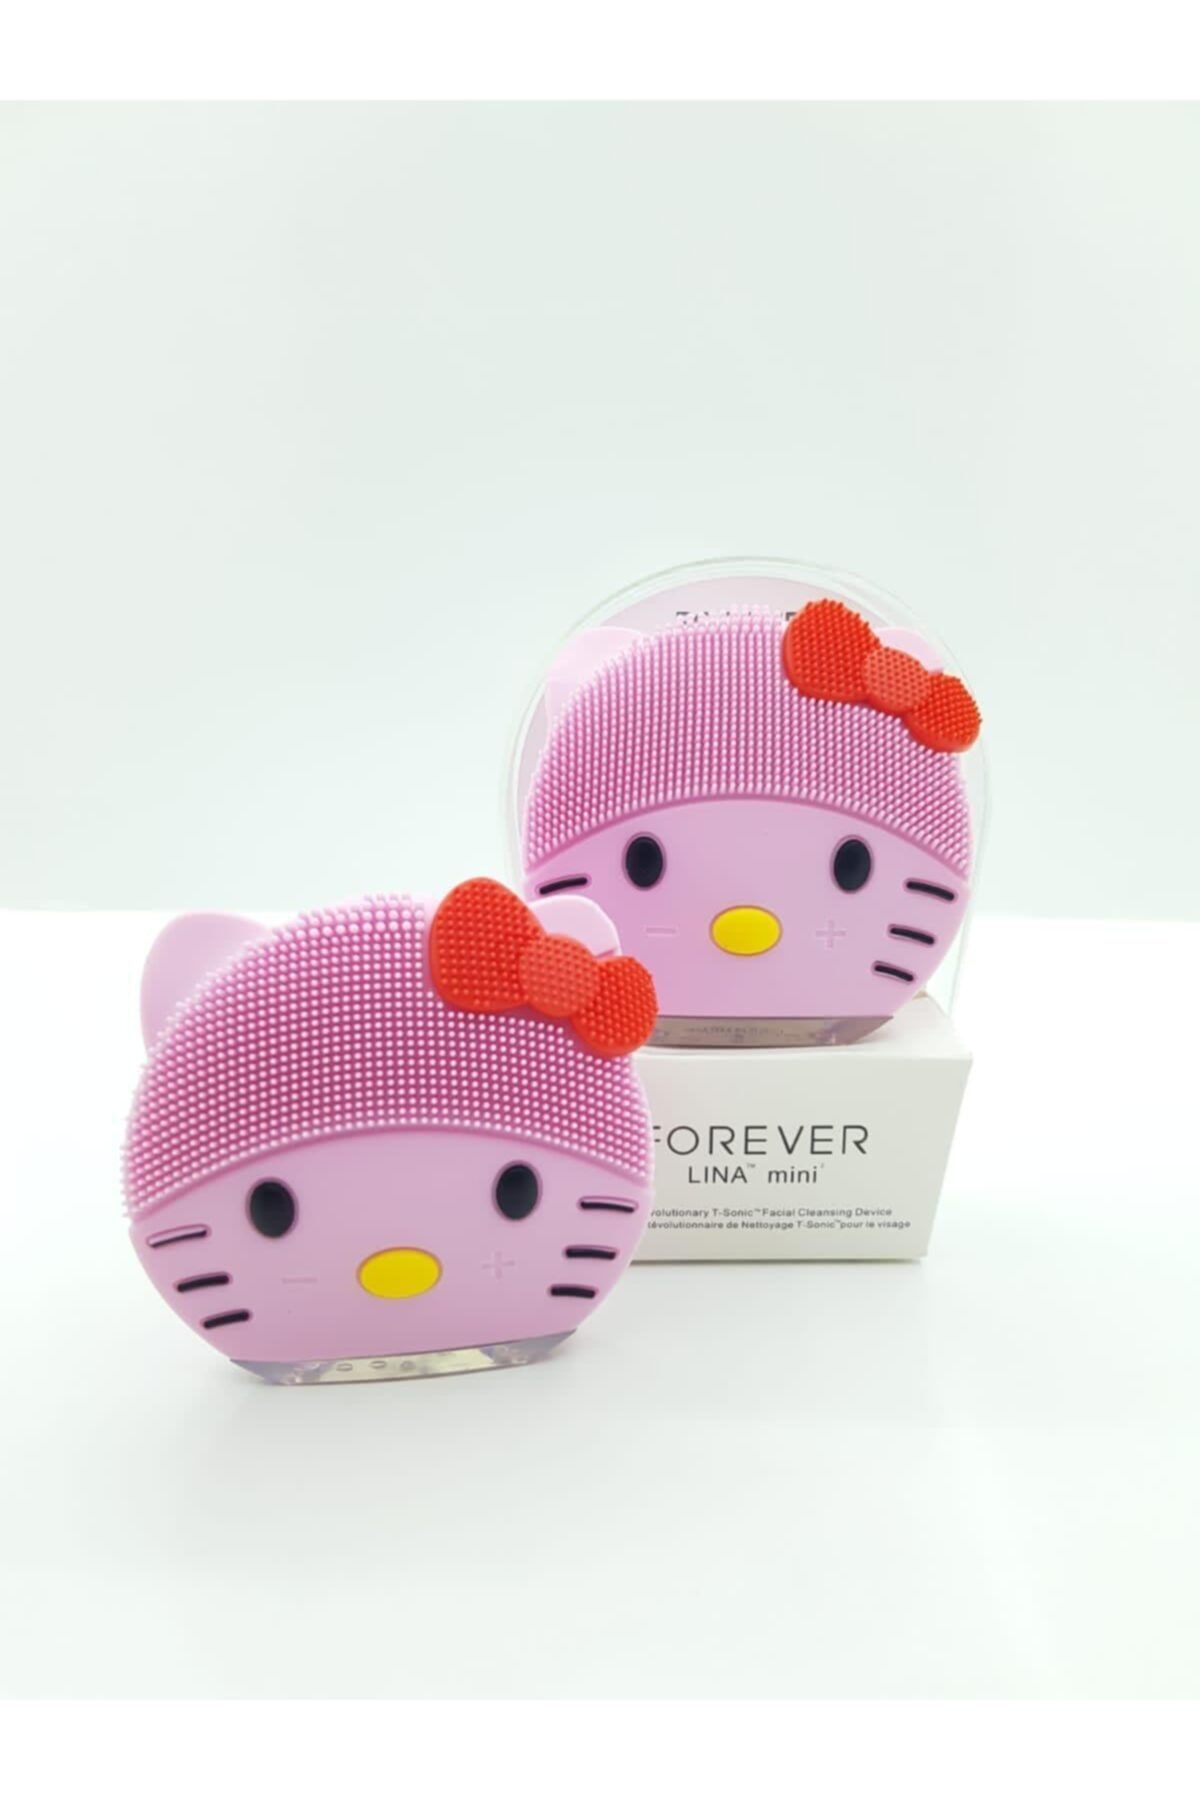 Genel Markalar Hello Kitty Resimli Cilt Temizleme Cihazı Ve Masaj Aleti